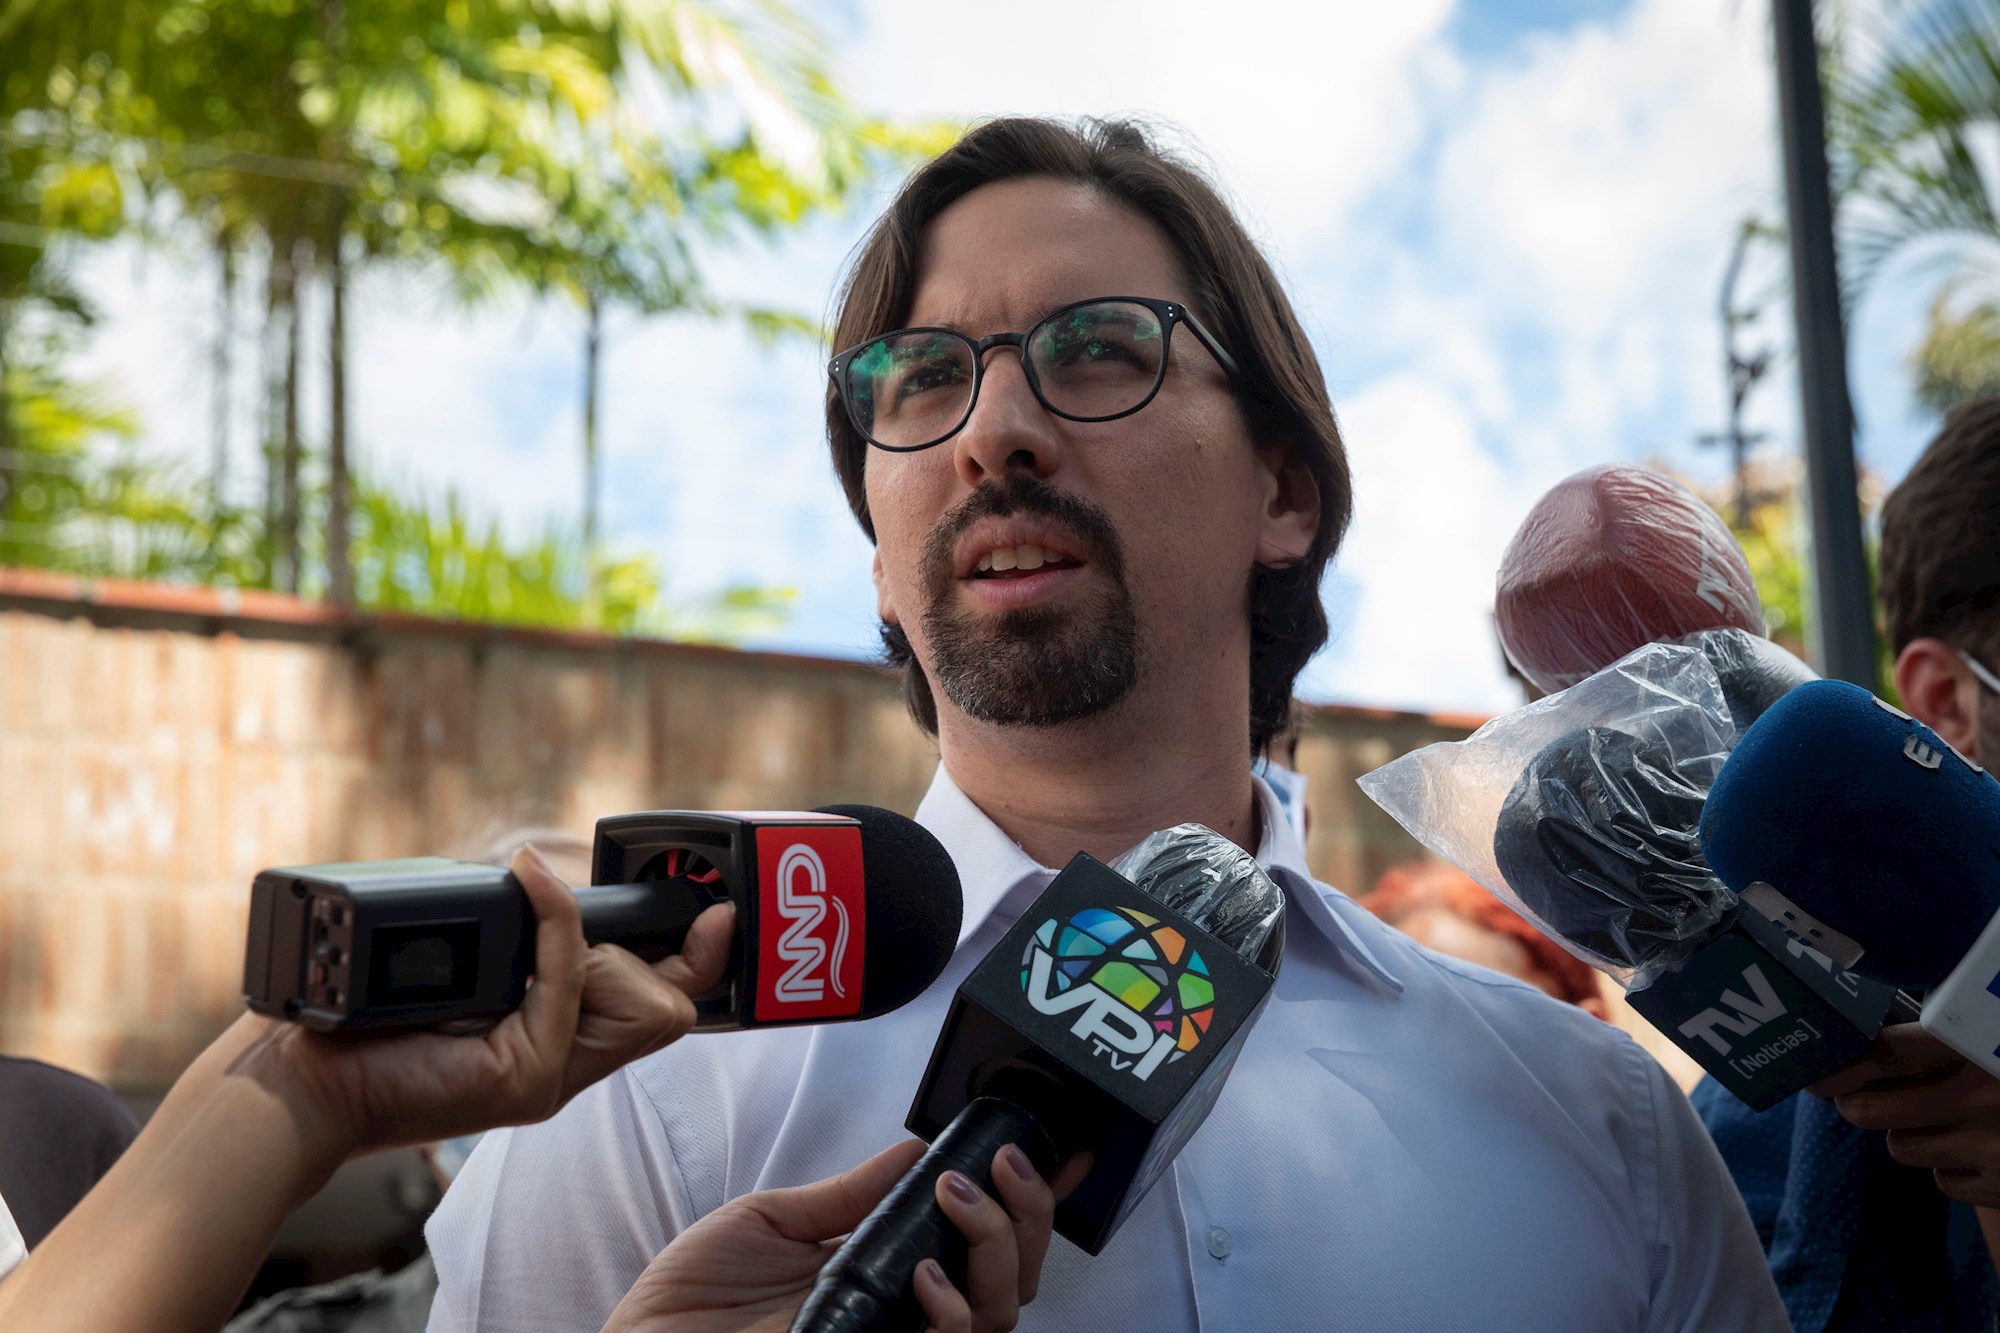 Freddy Guevara rechazó el atropello contra la libertad de prensa y medios en Venezuela por parte del régimen